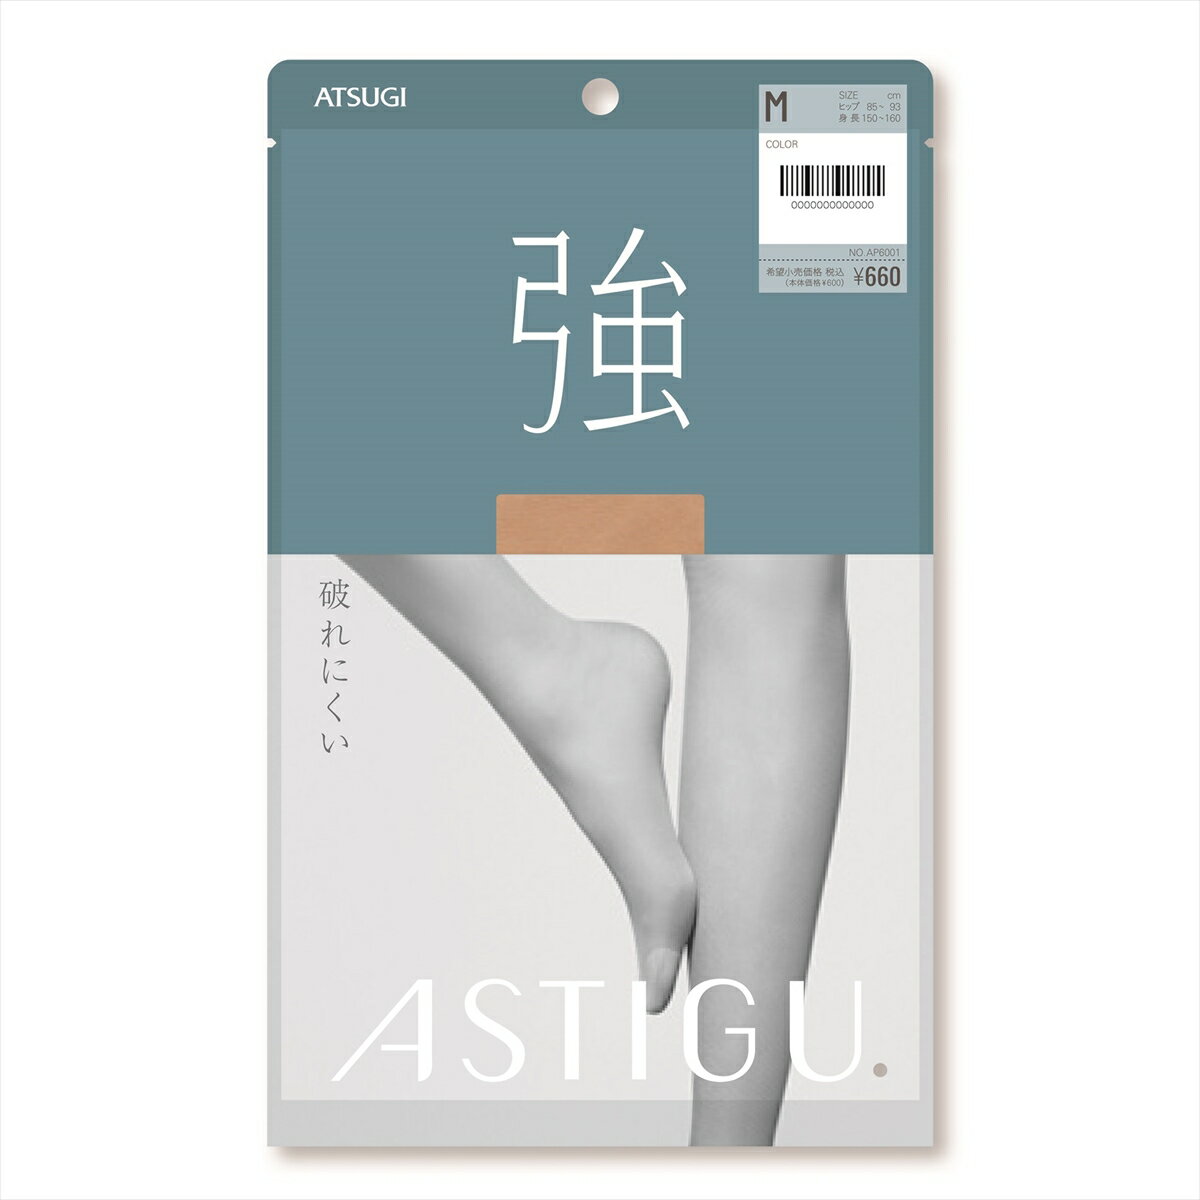 ASTIGU【強】破れにくい ストッキング (全5色)(S M L LL) レディース アスティーグ アツギ